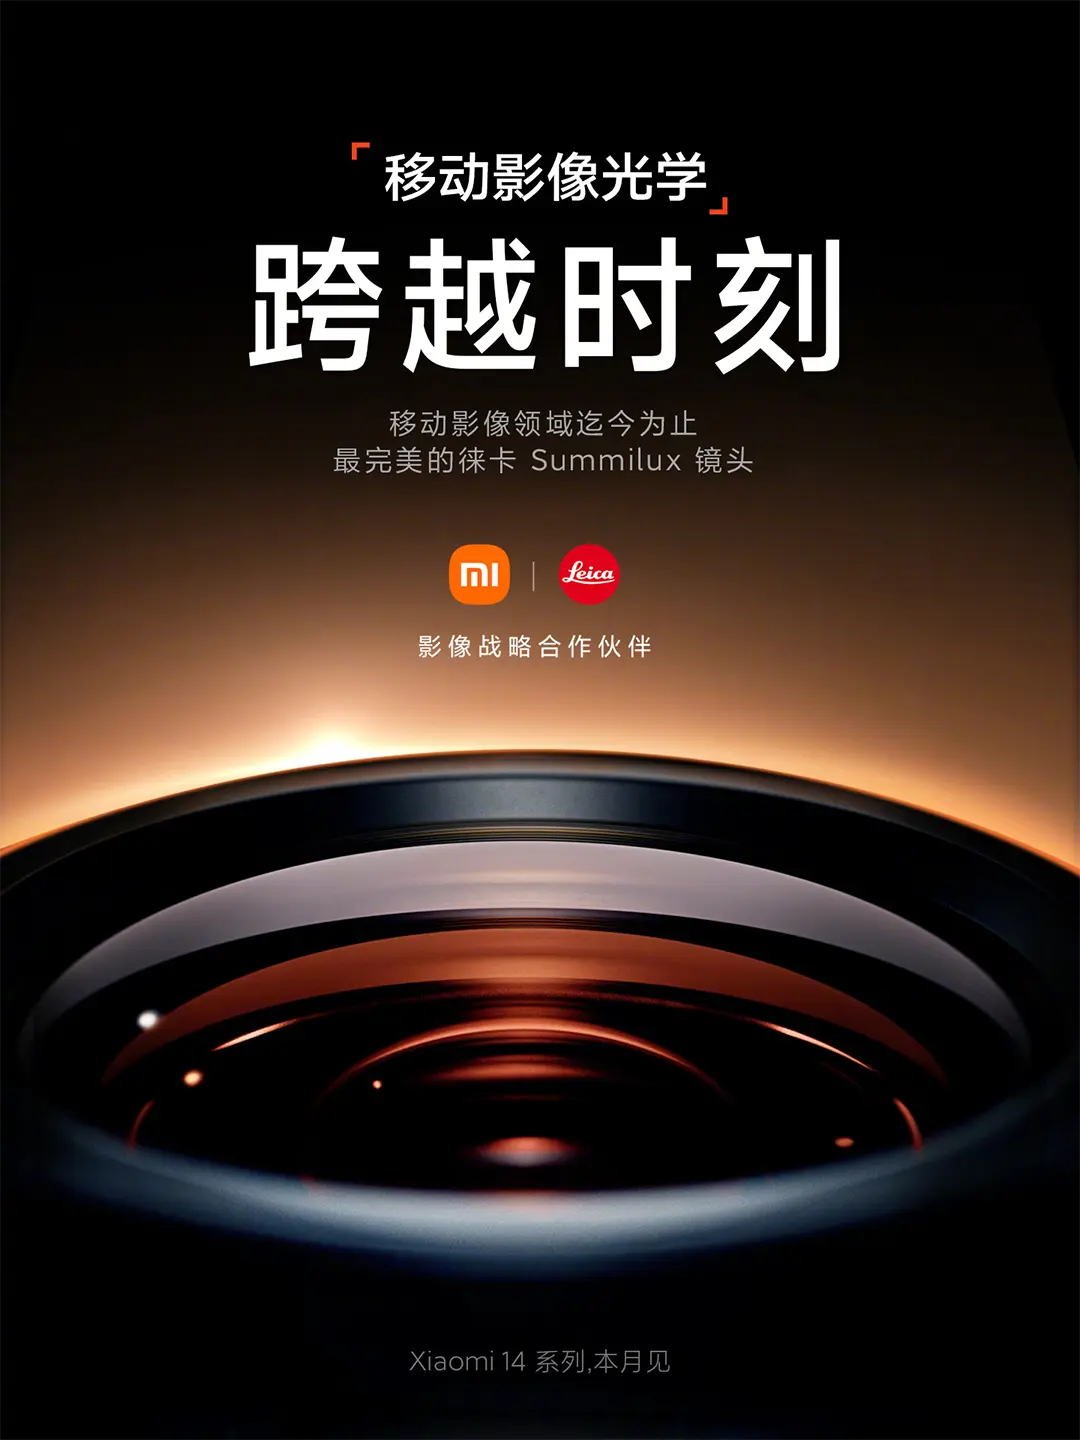 Hivatalos! Xiaomi 14 Leica Summilux optikával lesz felszerelve